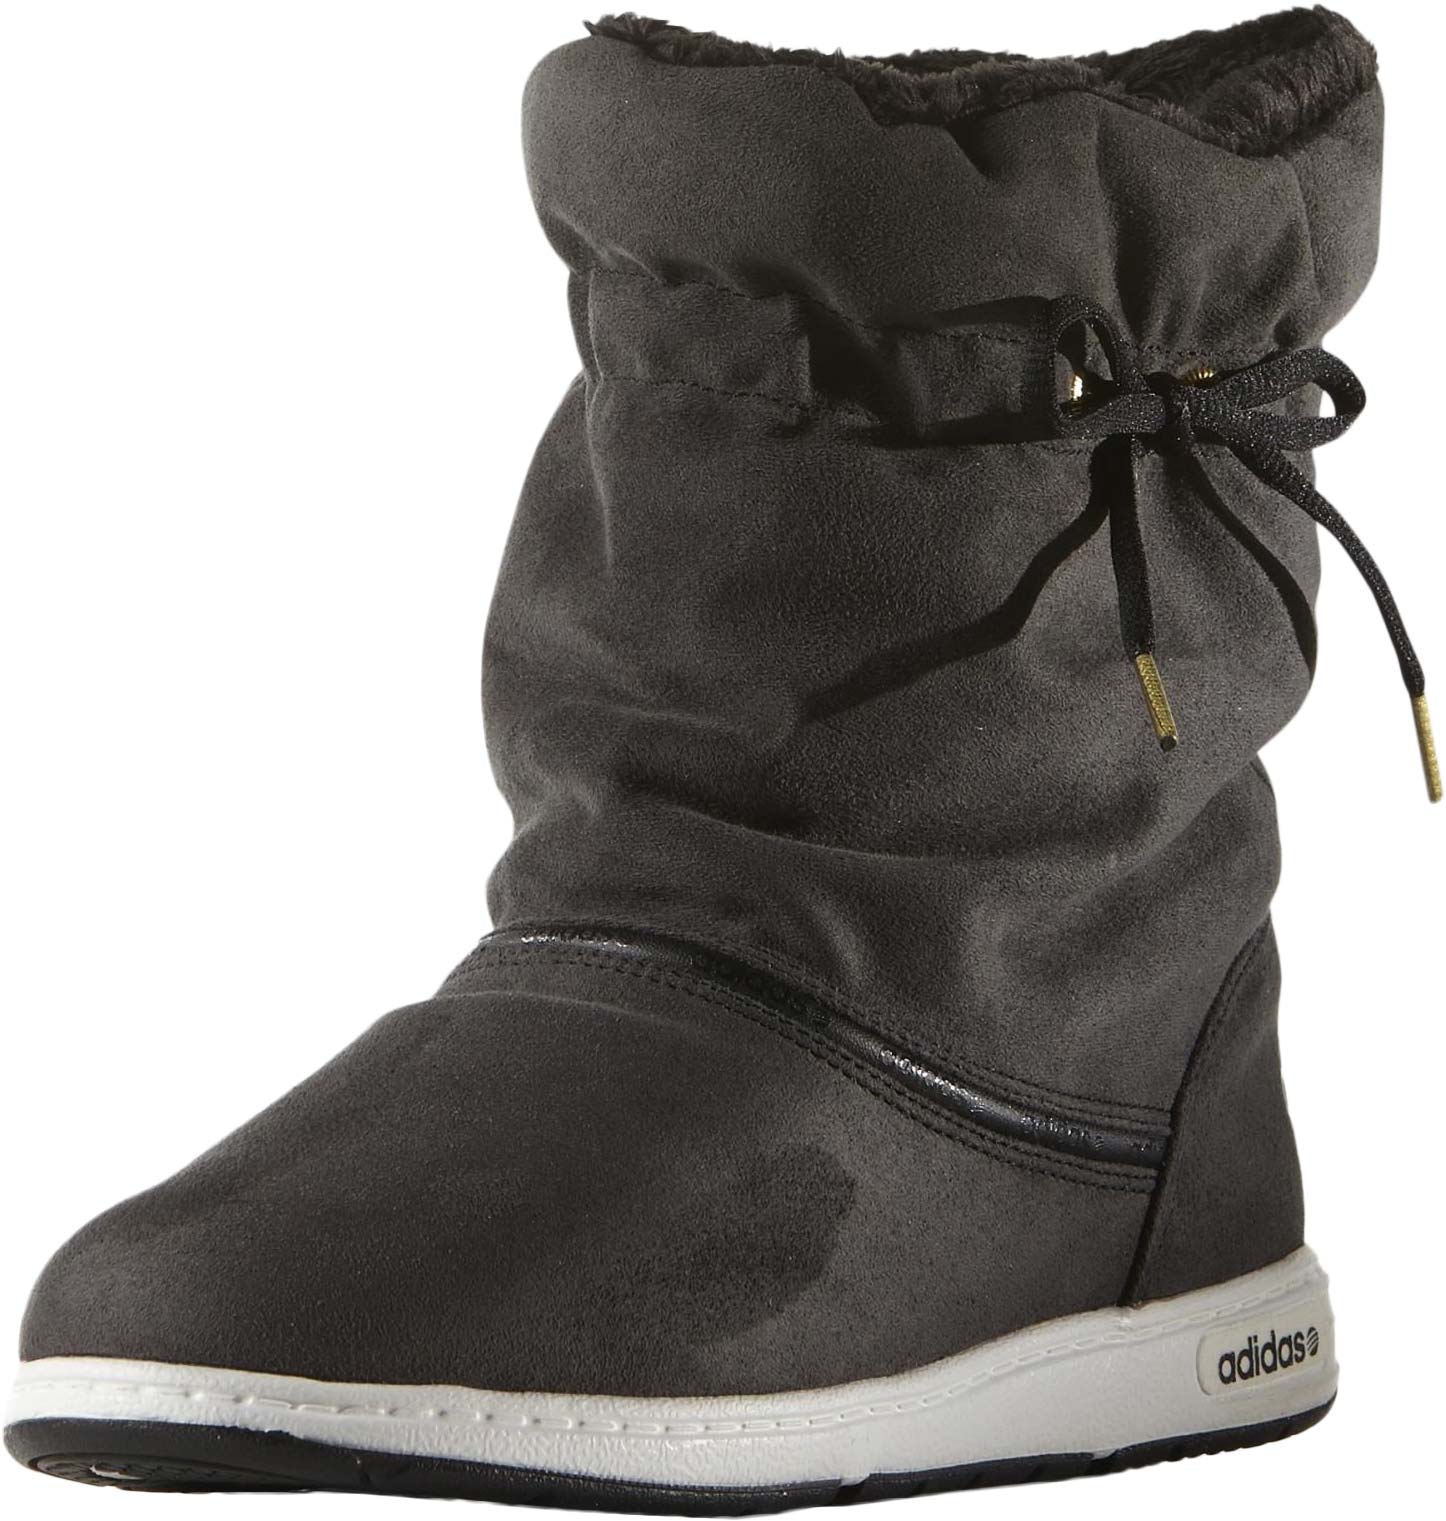 Girls' Winter Boots